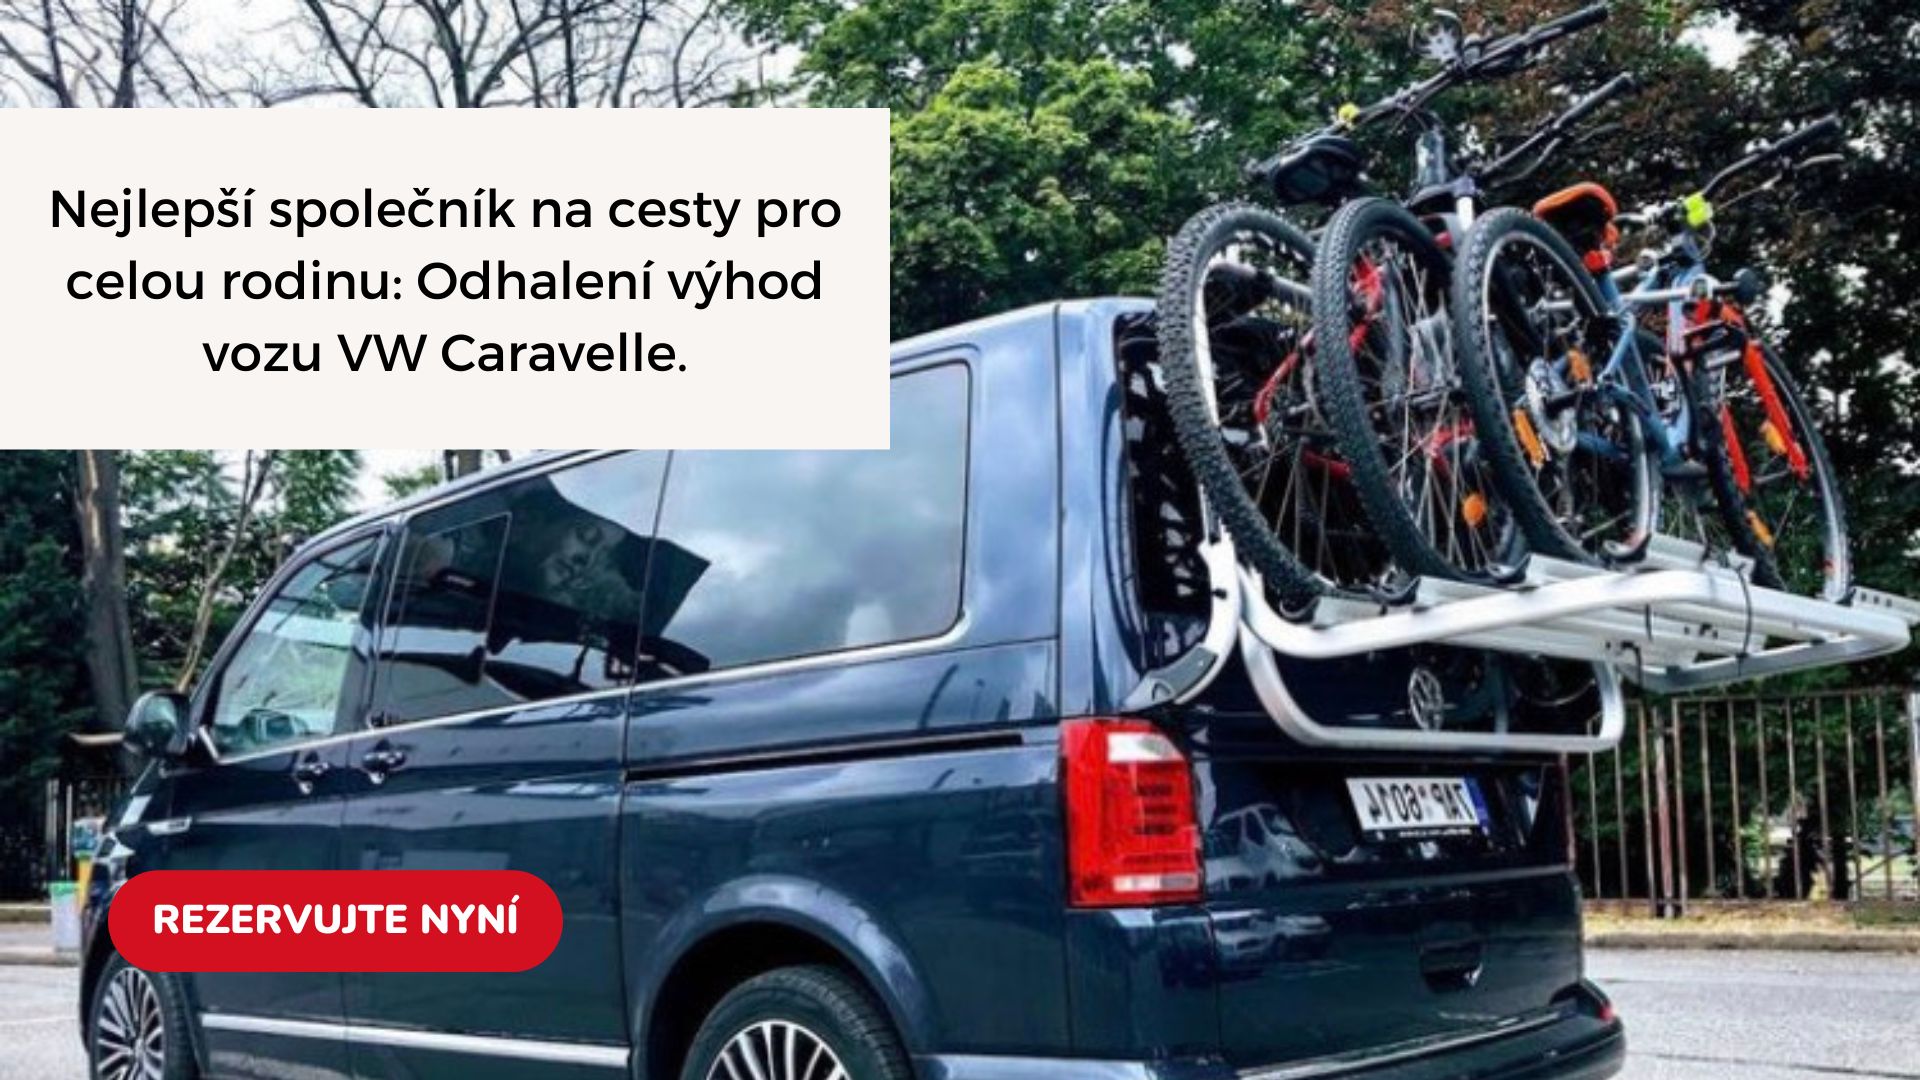 Nejlepší společník na cesty pro celou rodinu: Odhalení výhod vozu VW Caravelle